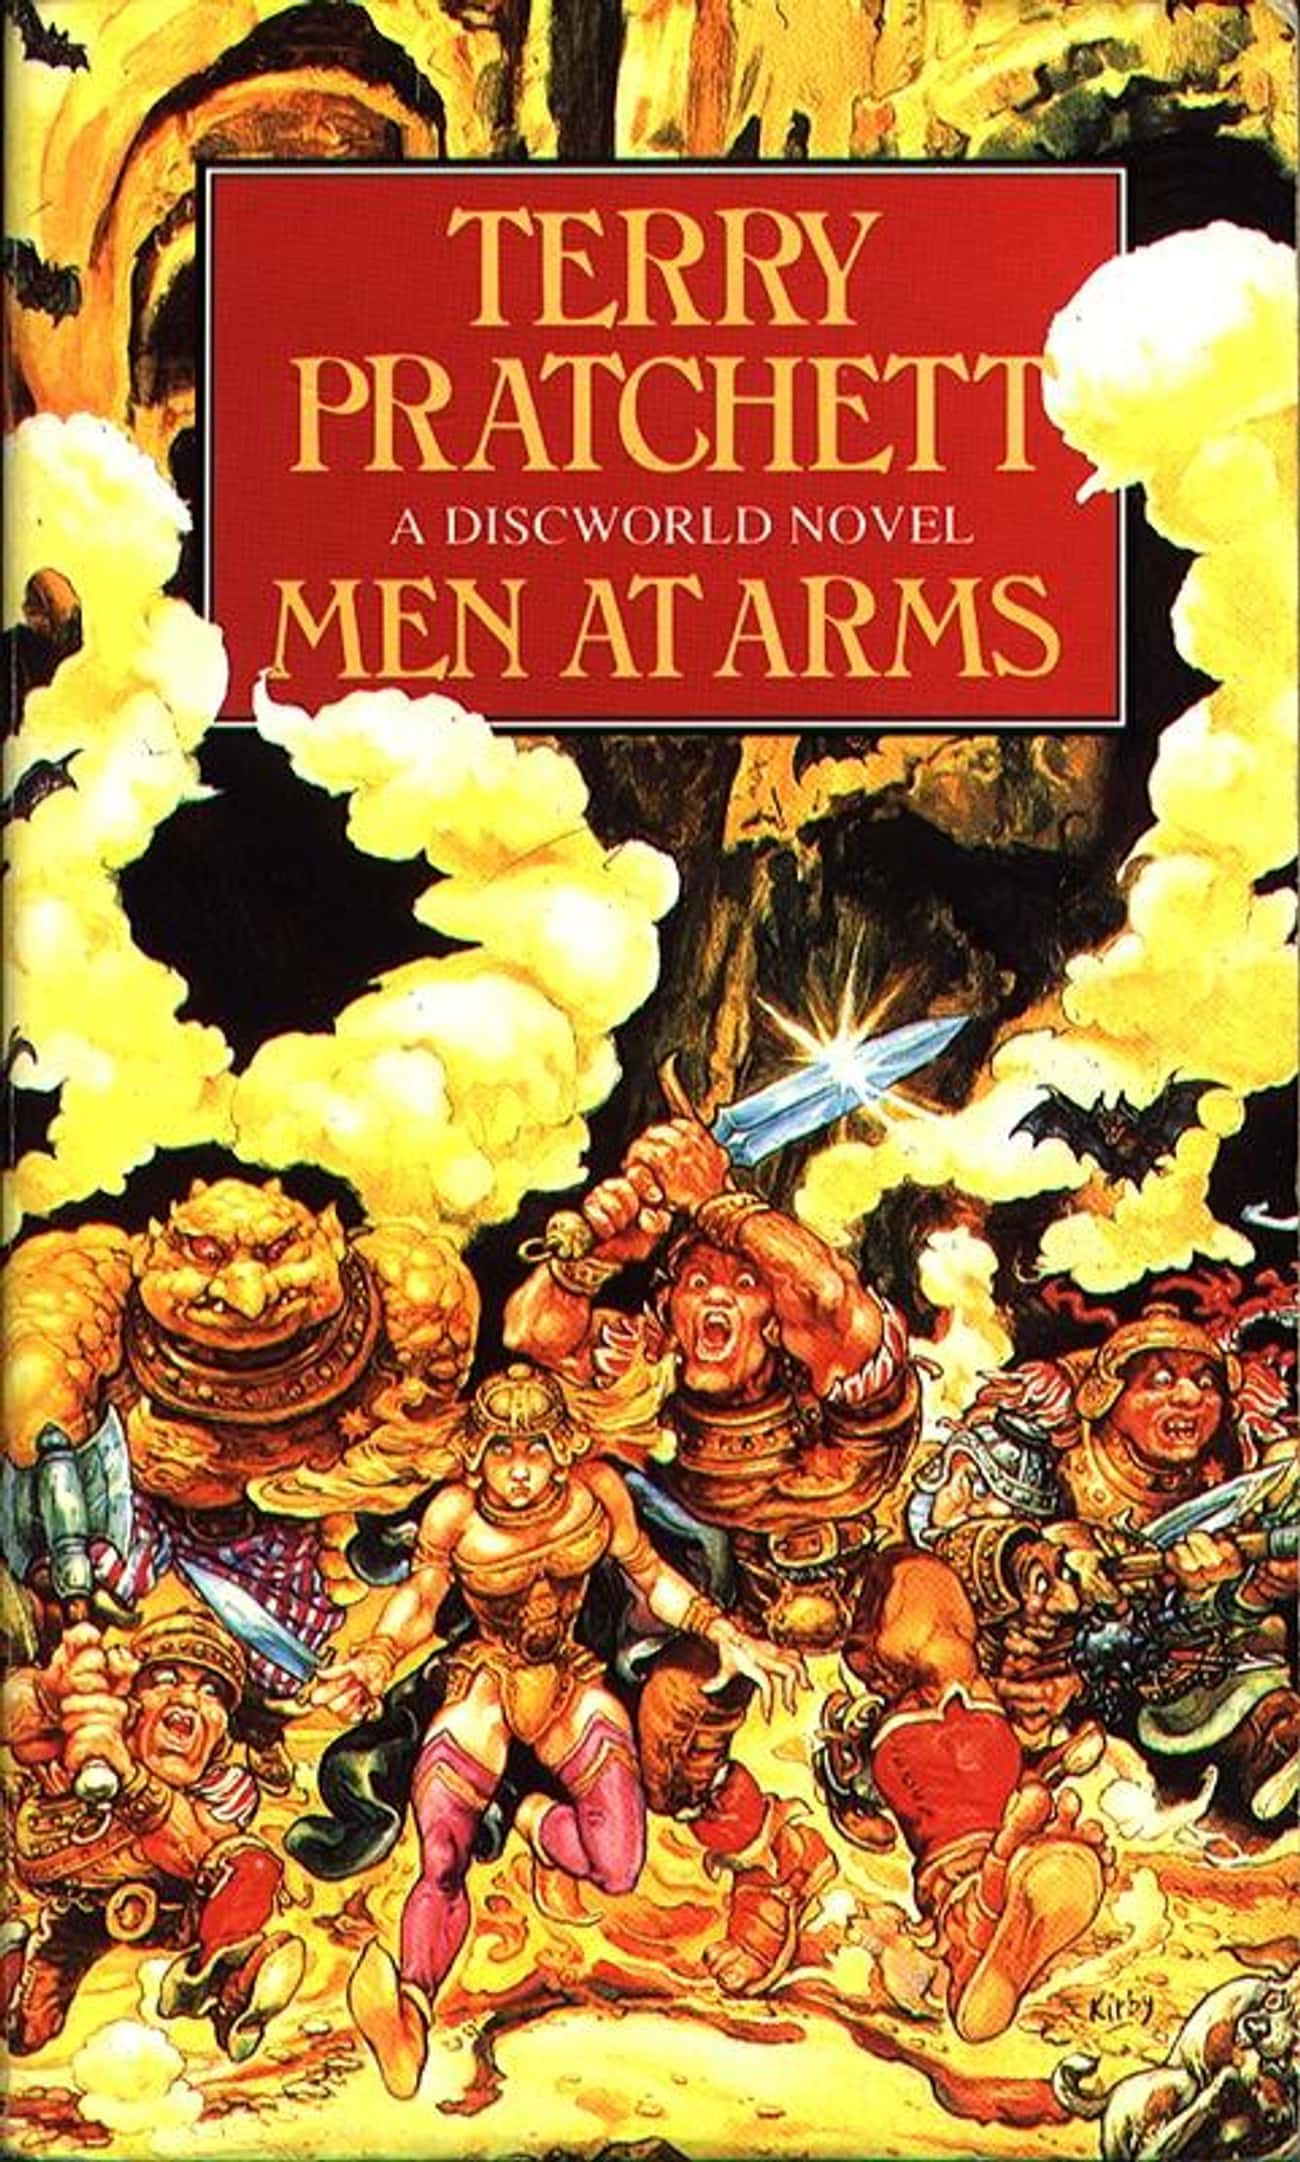 Men at Arms